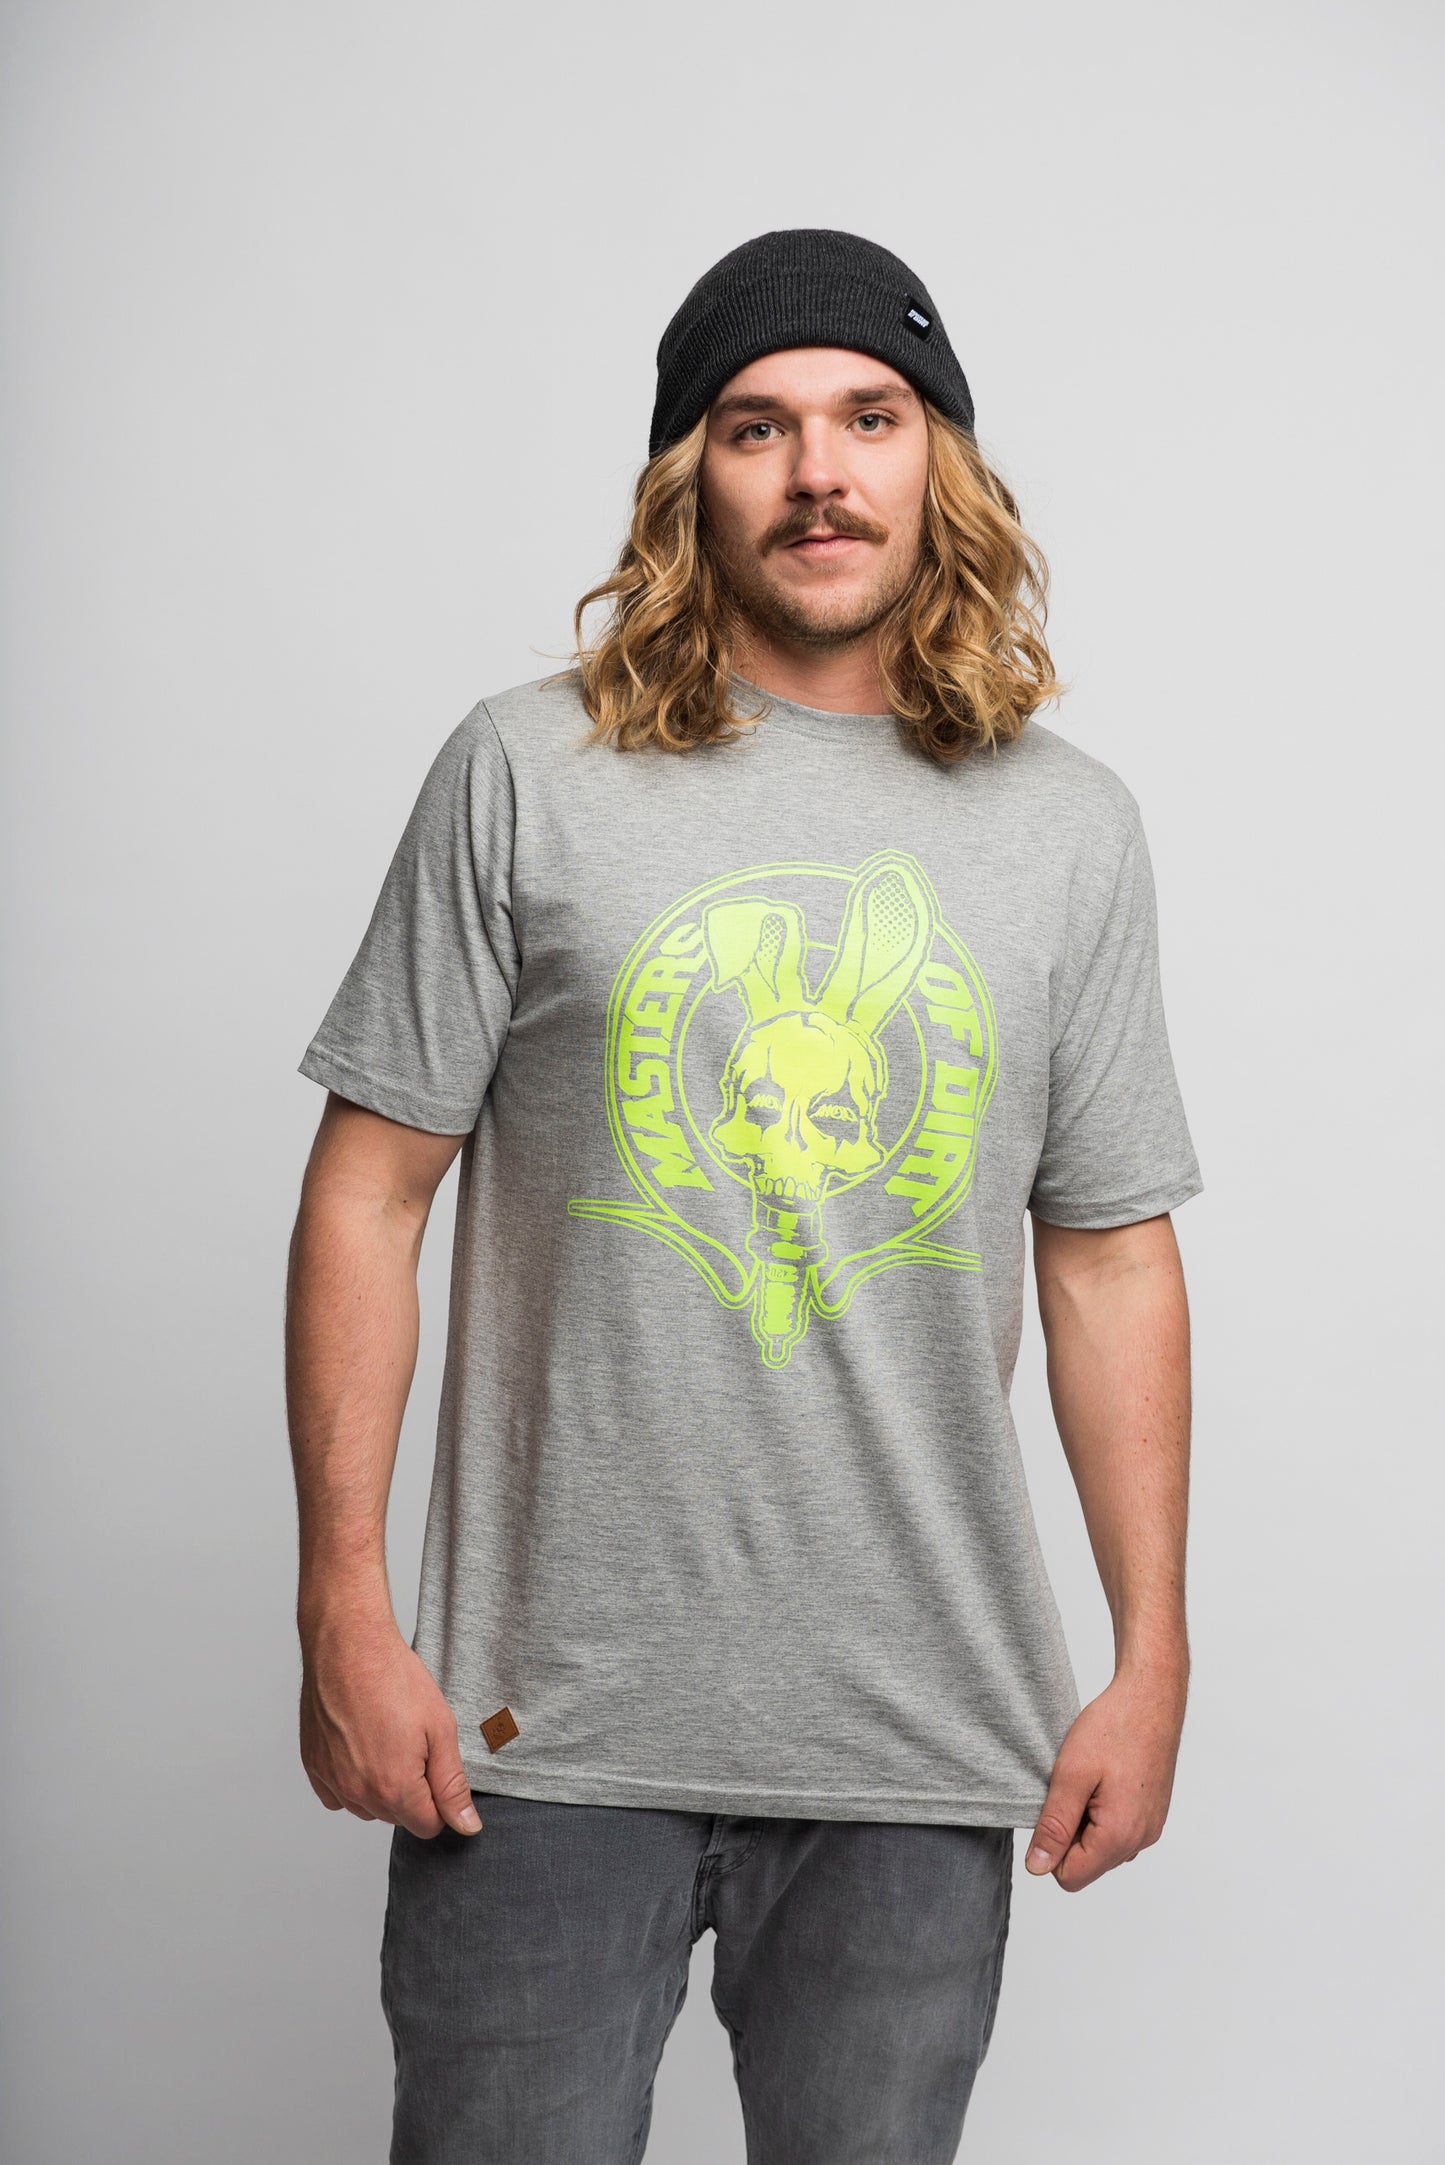 T - Shirt "Crest Grunge"